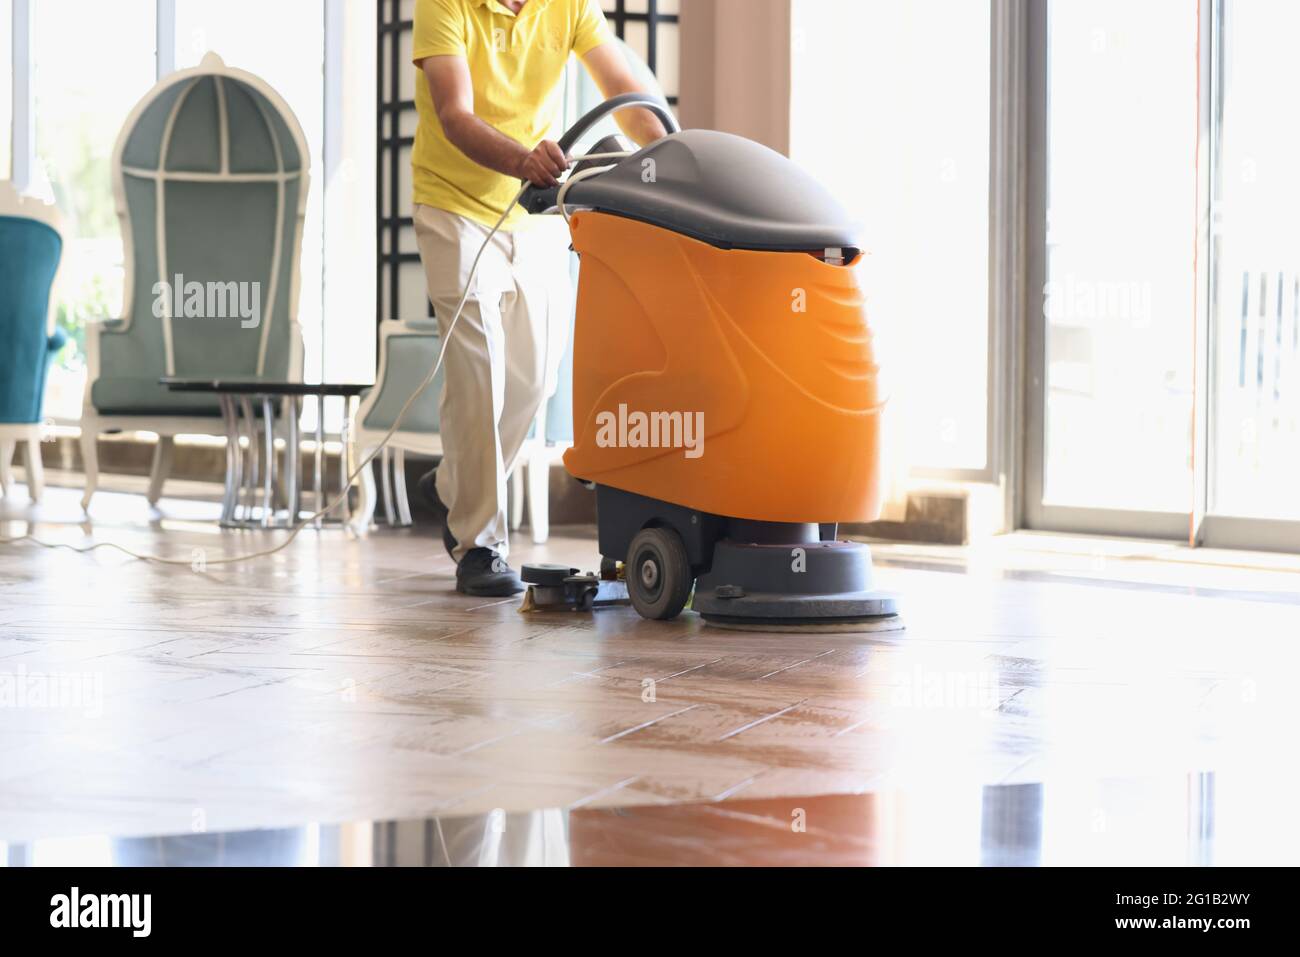 L'homme nettoie le hall de l'hôtel avec un aspirateur industriel Banque D'Images